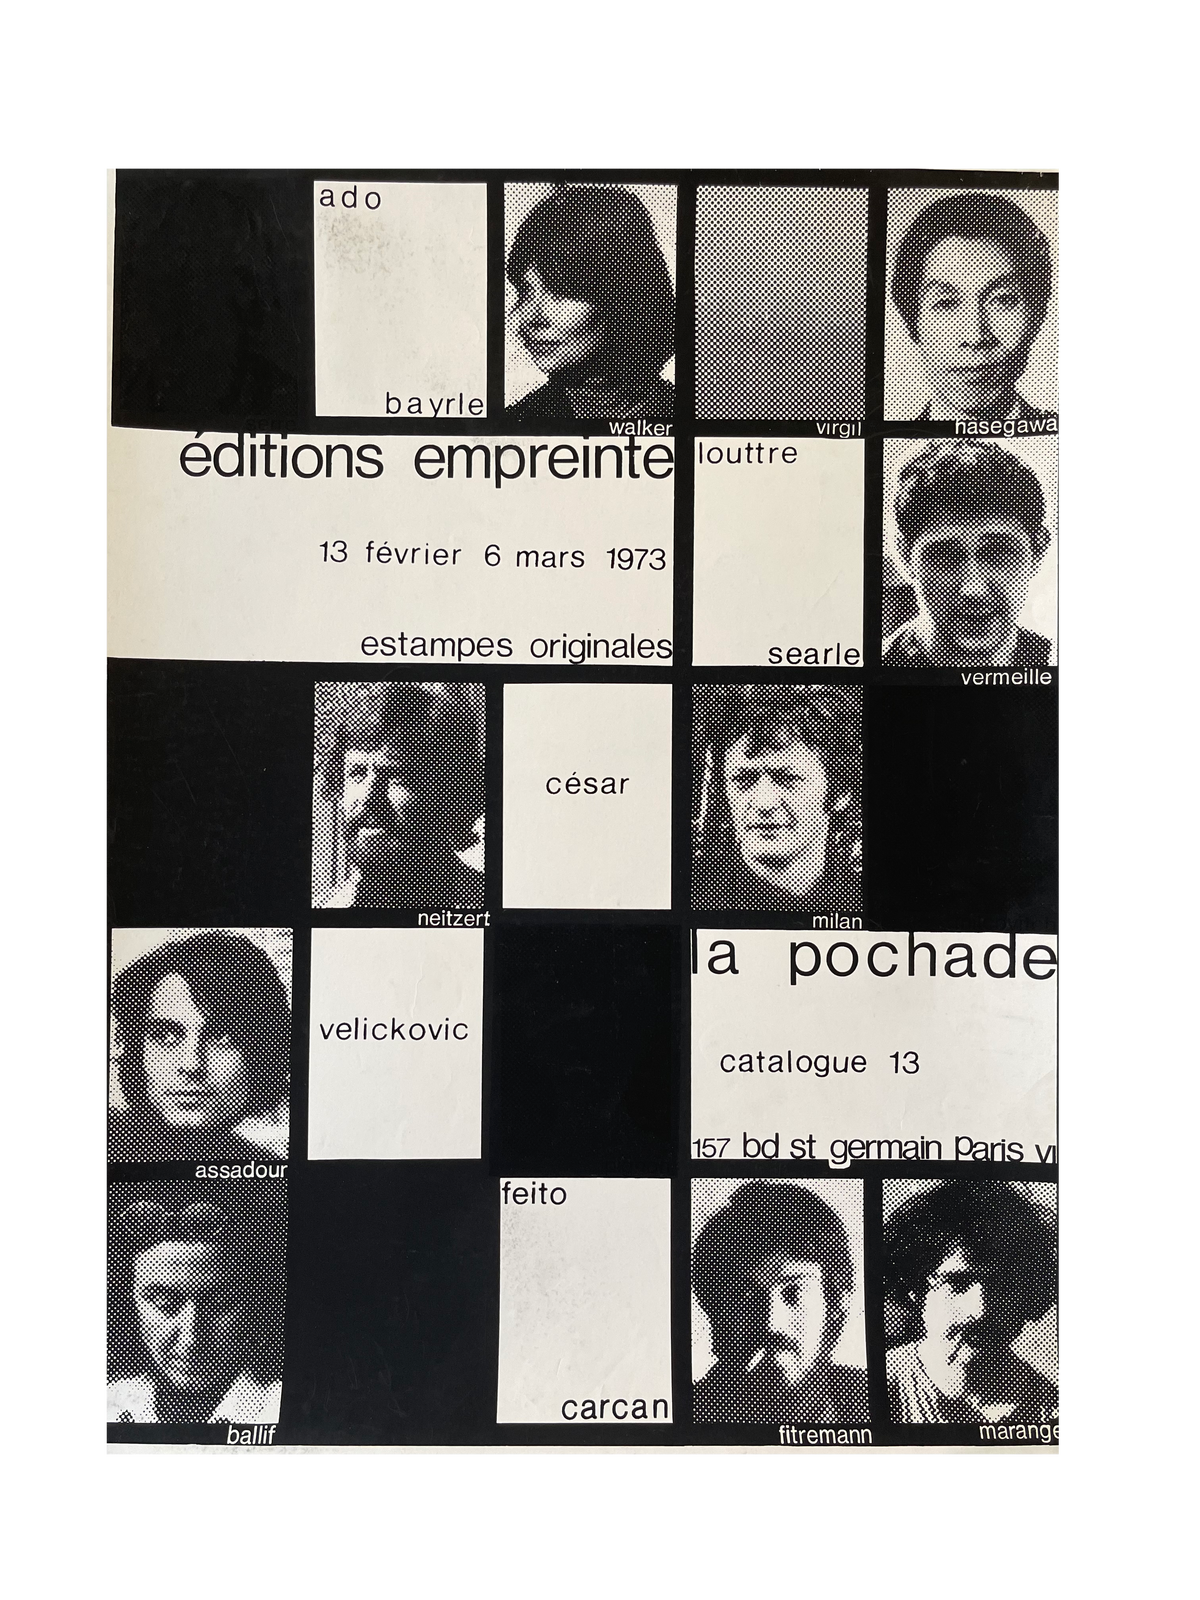 Editions Empreinte La Pochade